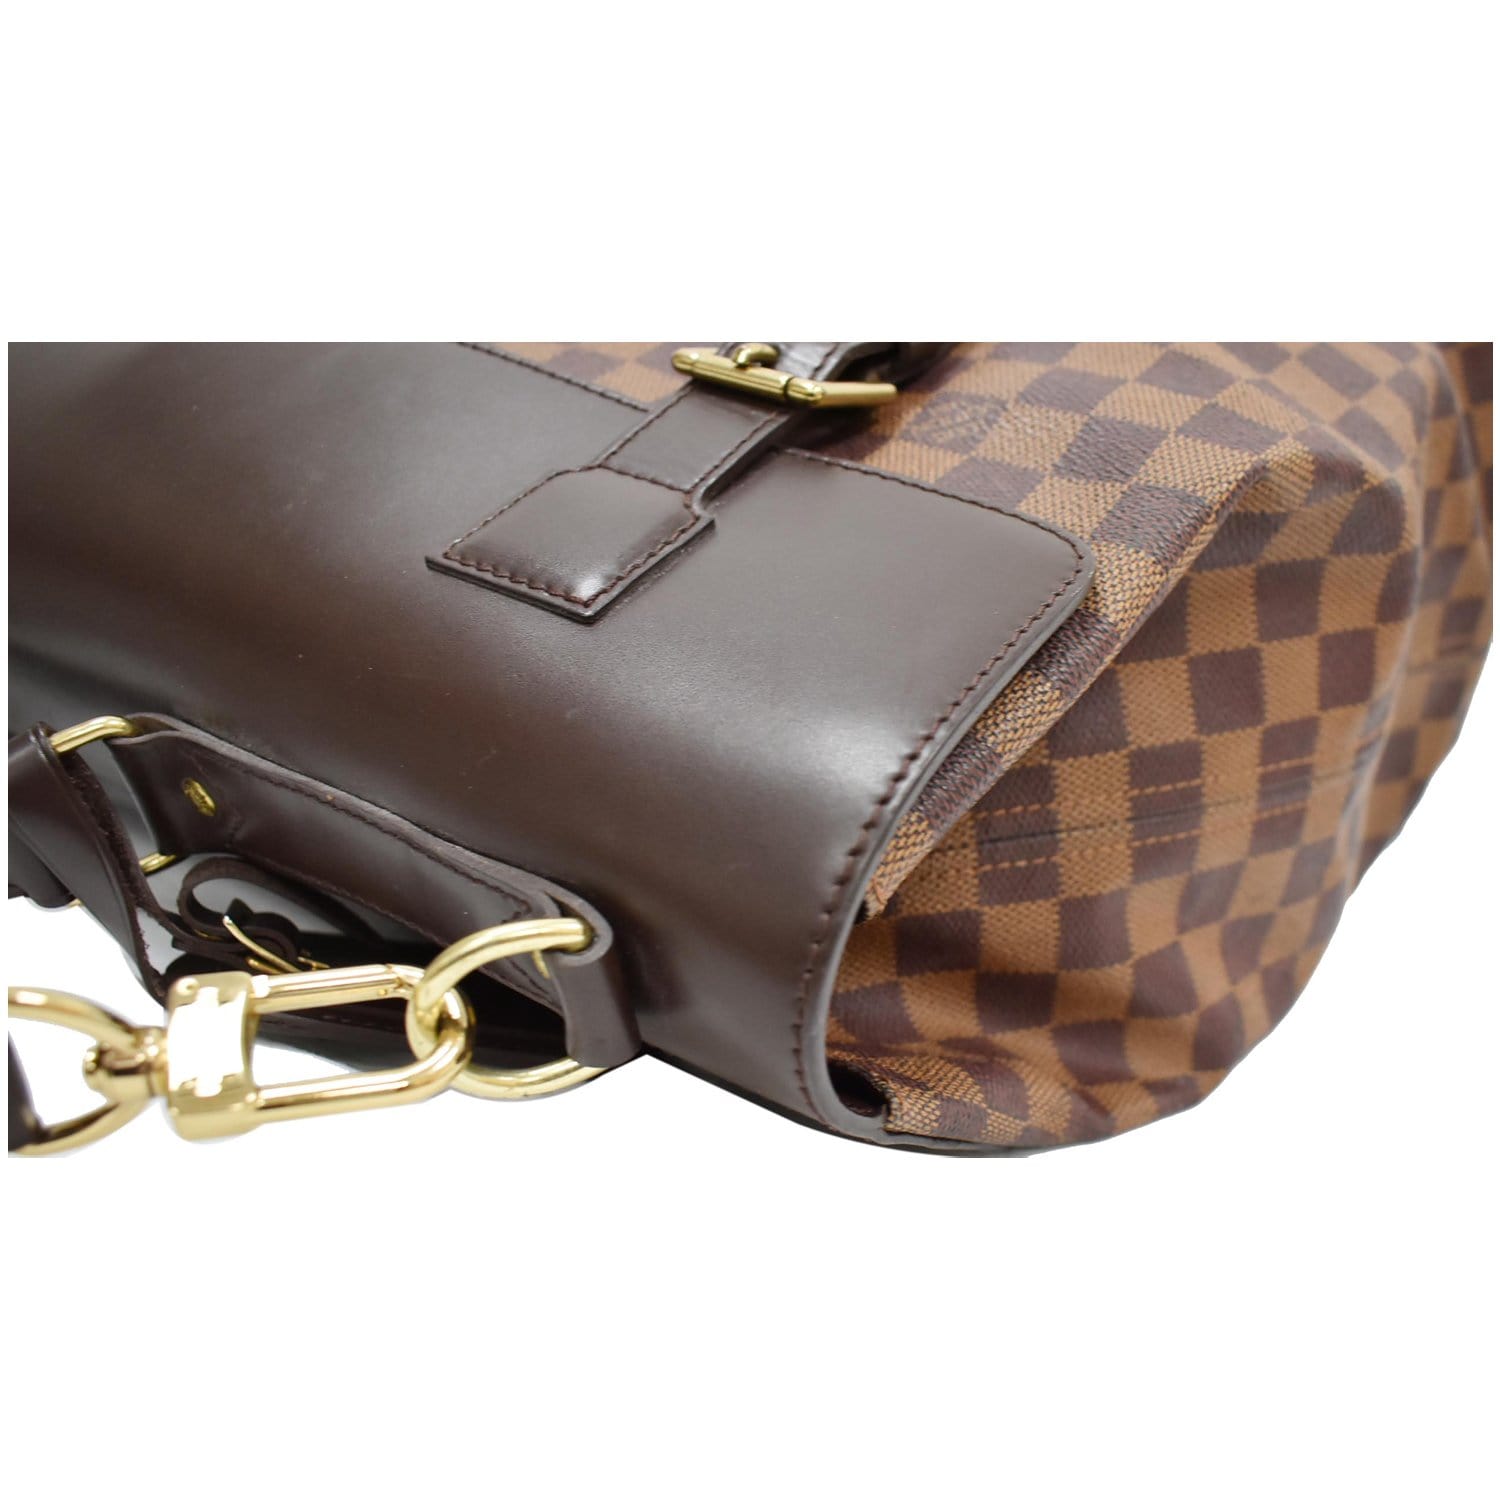 Louis Vuitton Damier Ebene Canvas Olav Pm (Authentic Pre-Owned) - ShopStyle  Shoulder Bags